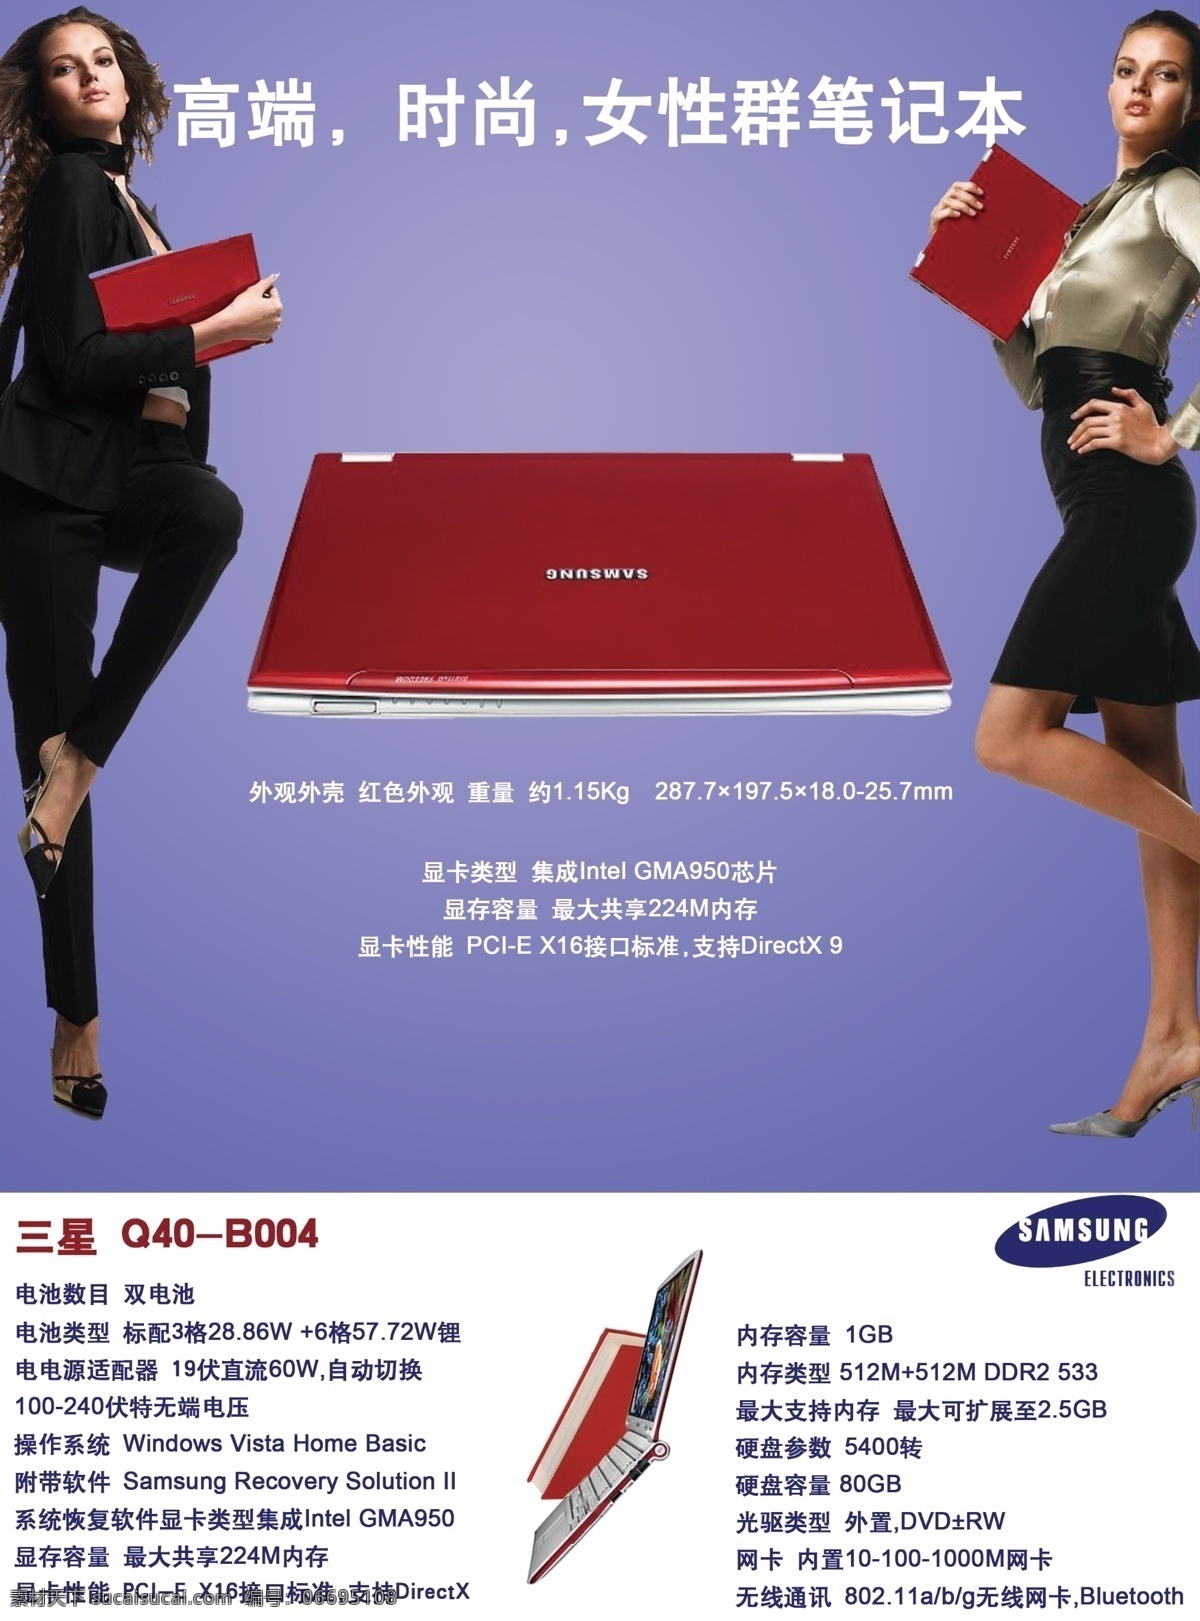 三星 笔记本 笔记本电脑 高端 模特 时尚 外国美女 宣传海报 紫色 宣传单 彩页 dm